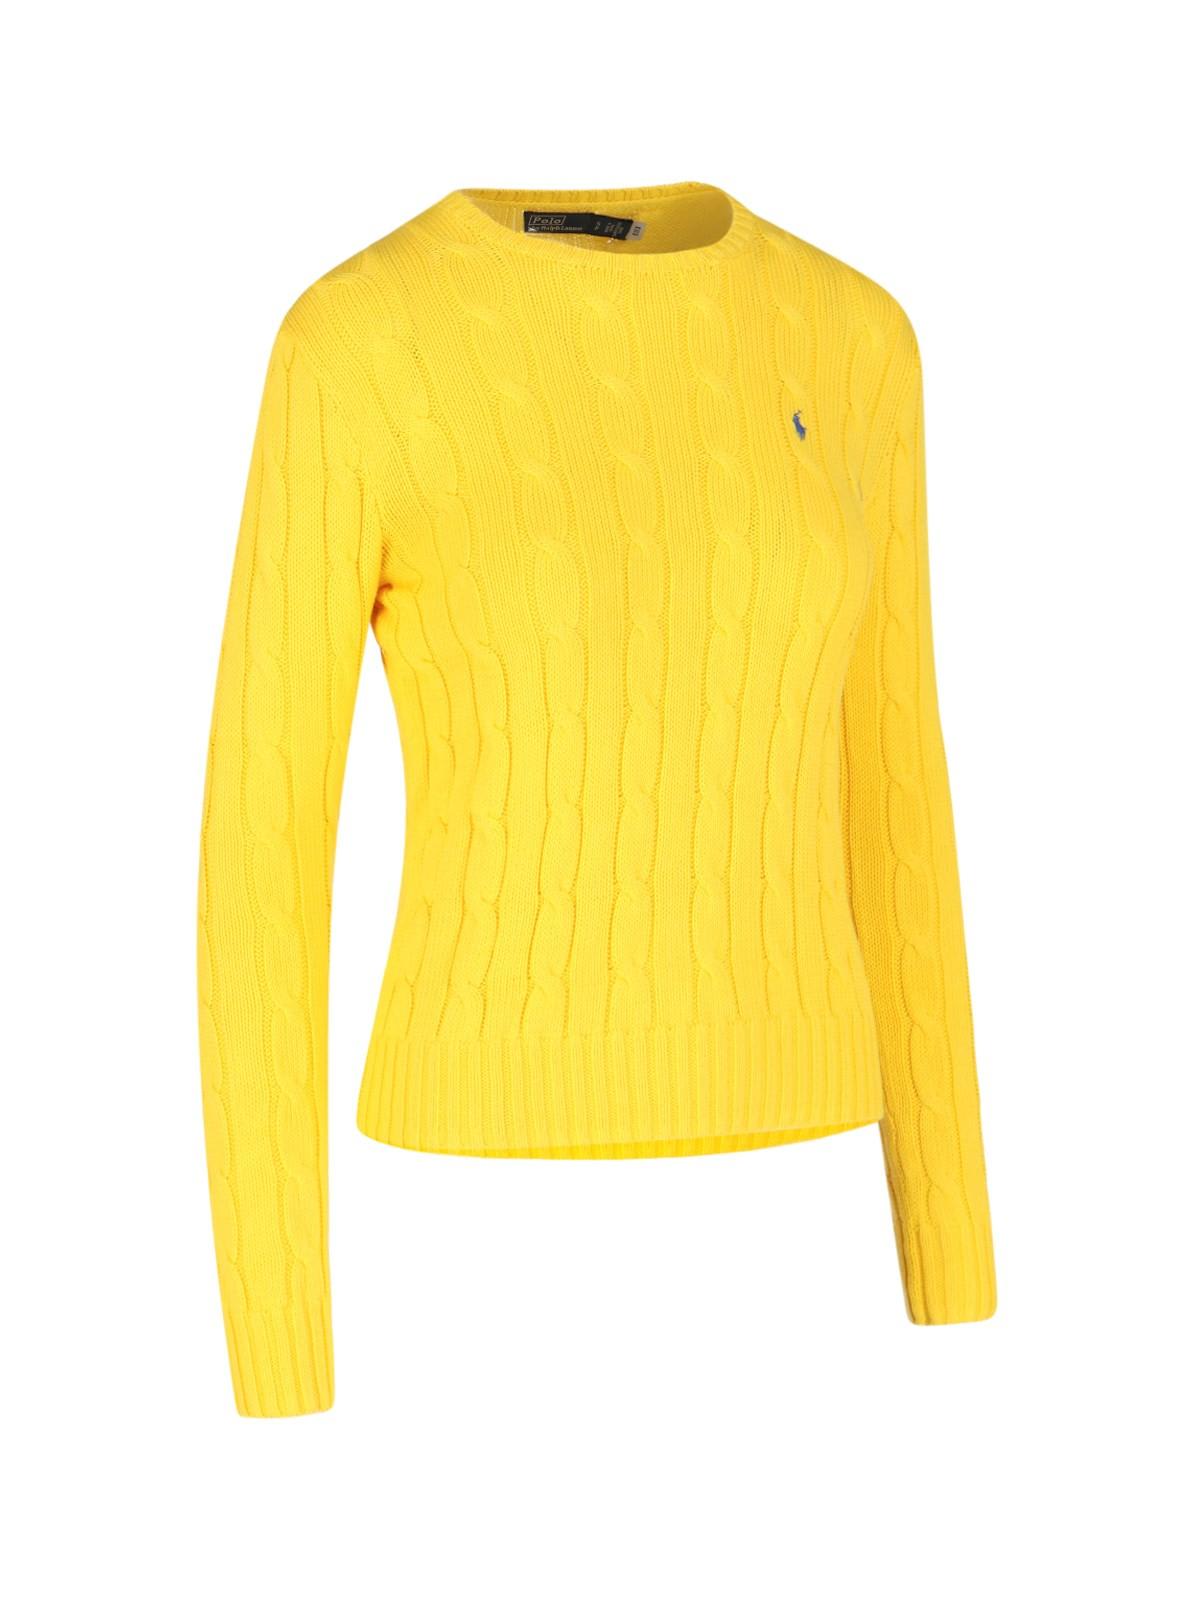 Ralph Lauren Logo Crew Neck Sweater In Trainer Yellow